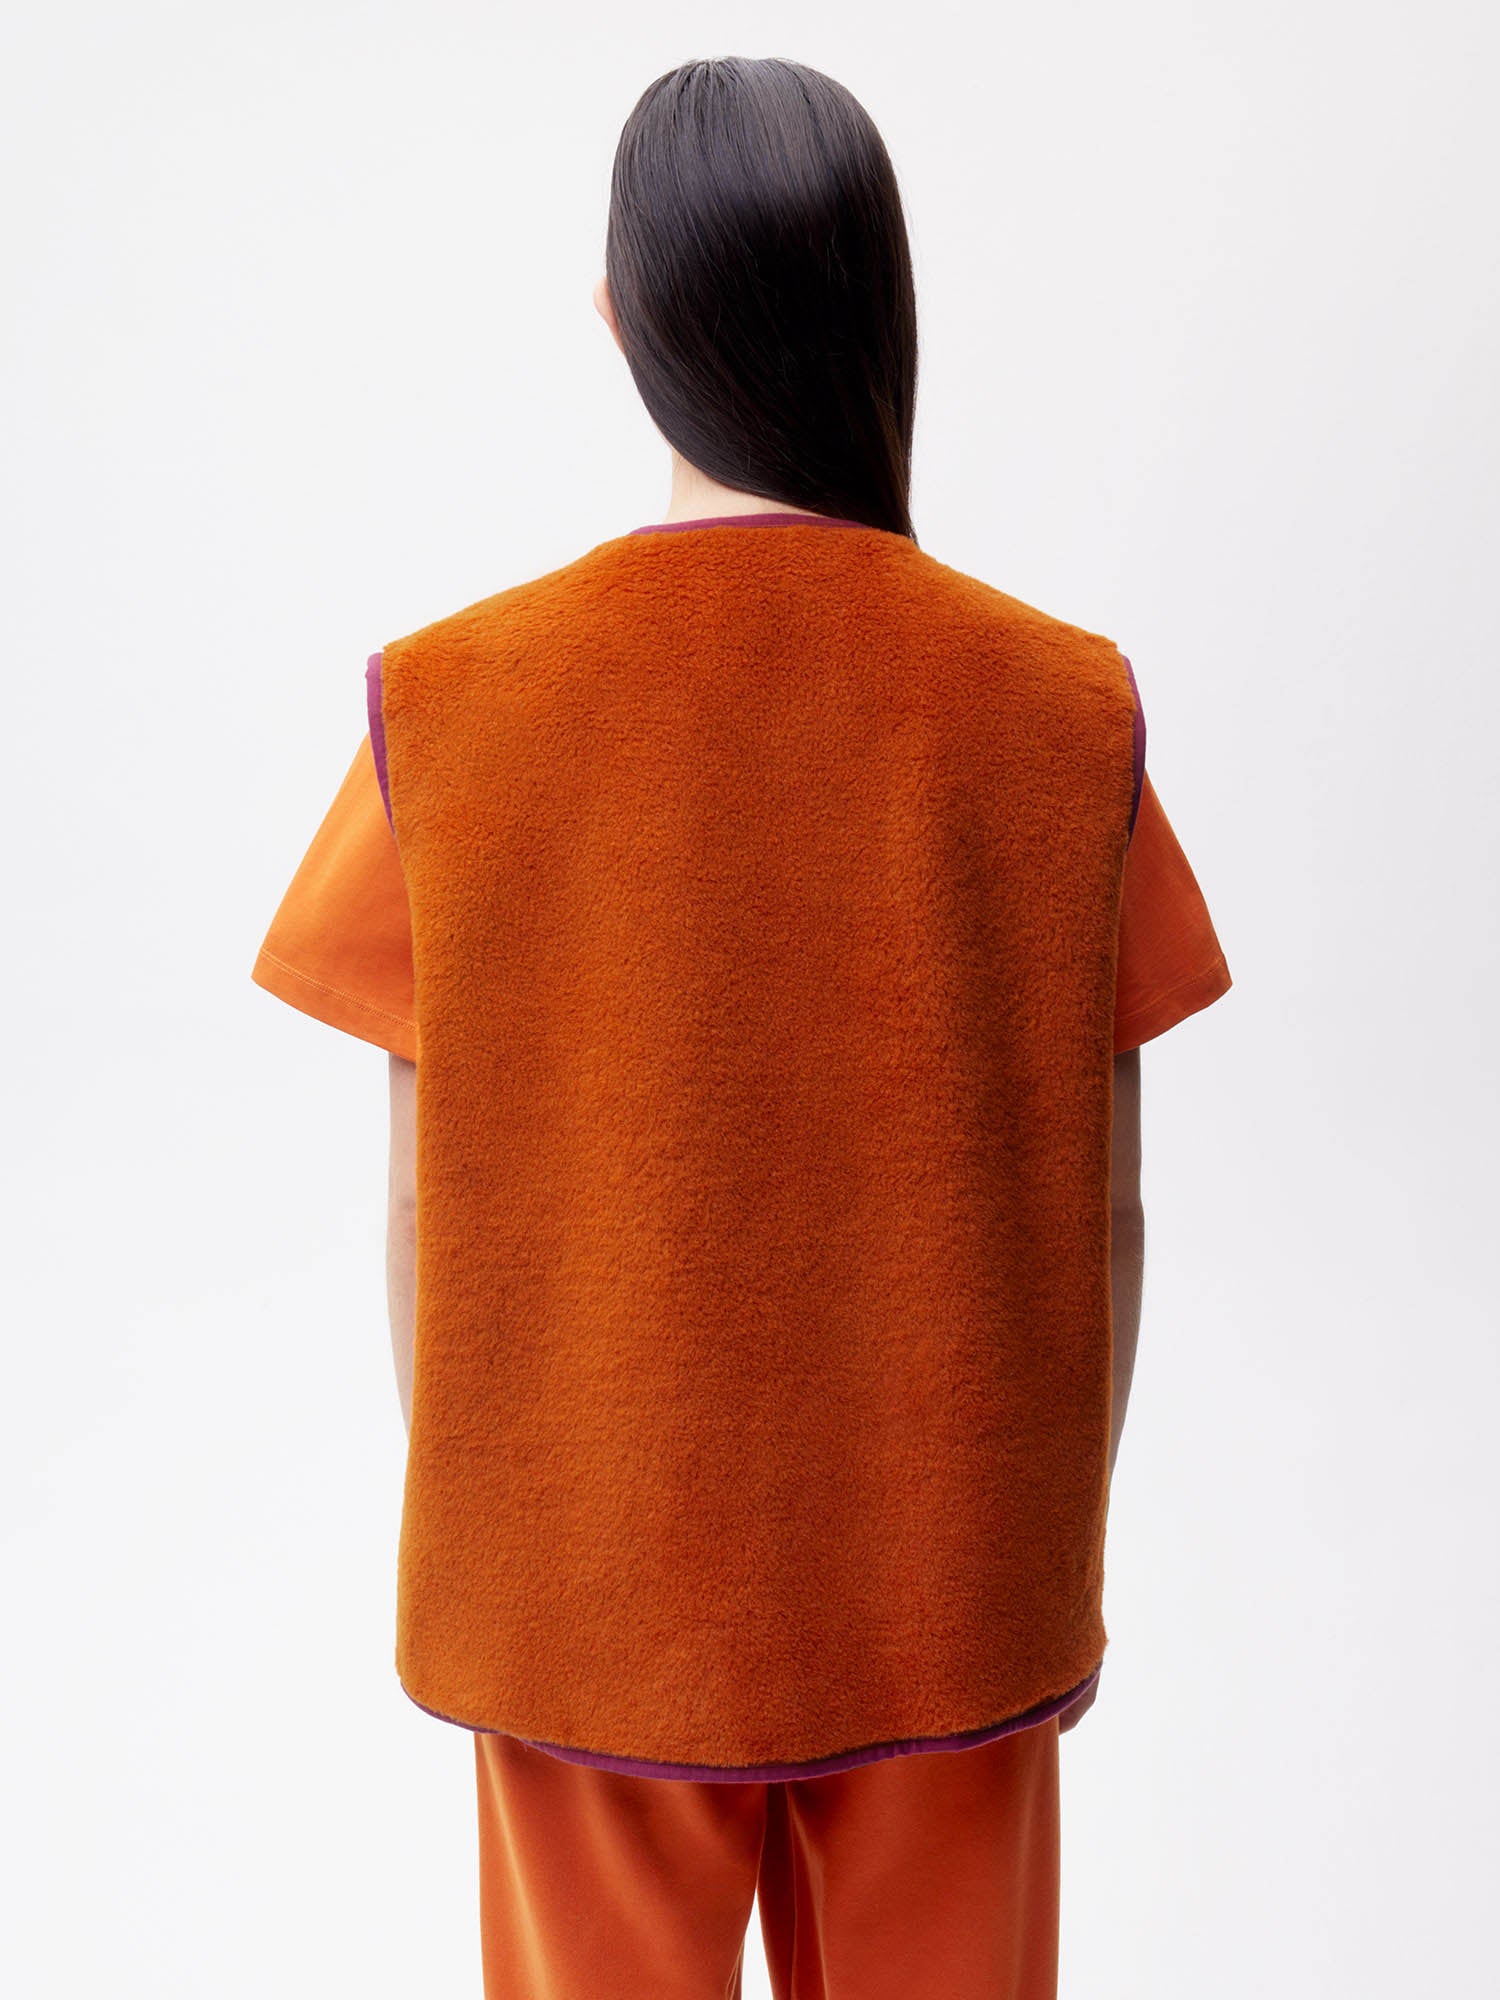 Recycled Wool Fleece Gilet—cinnamon orange female